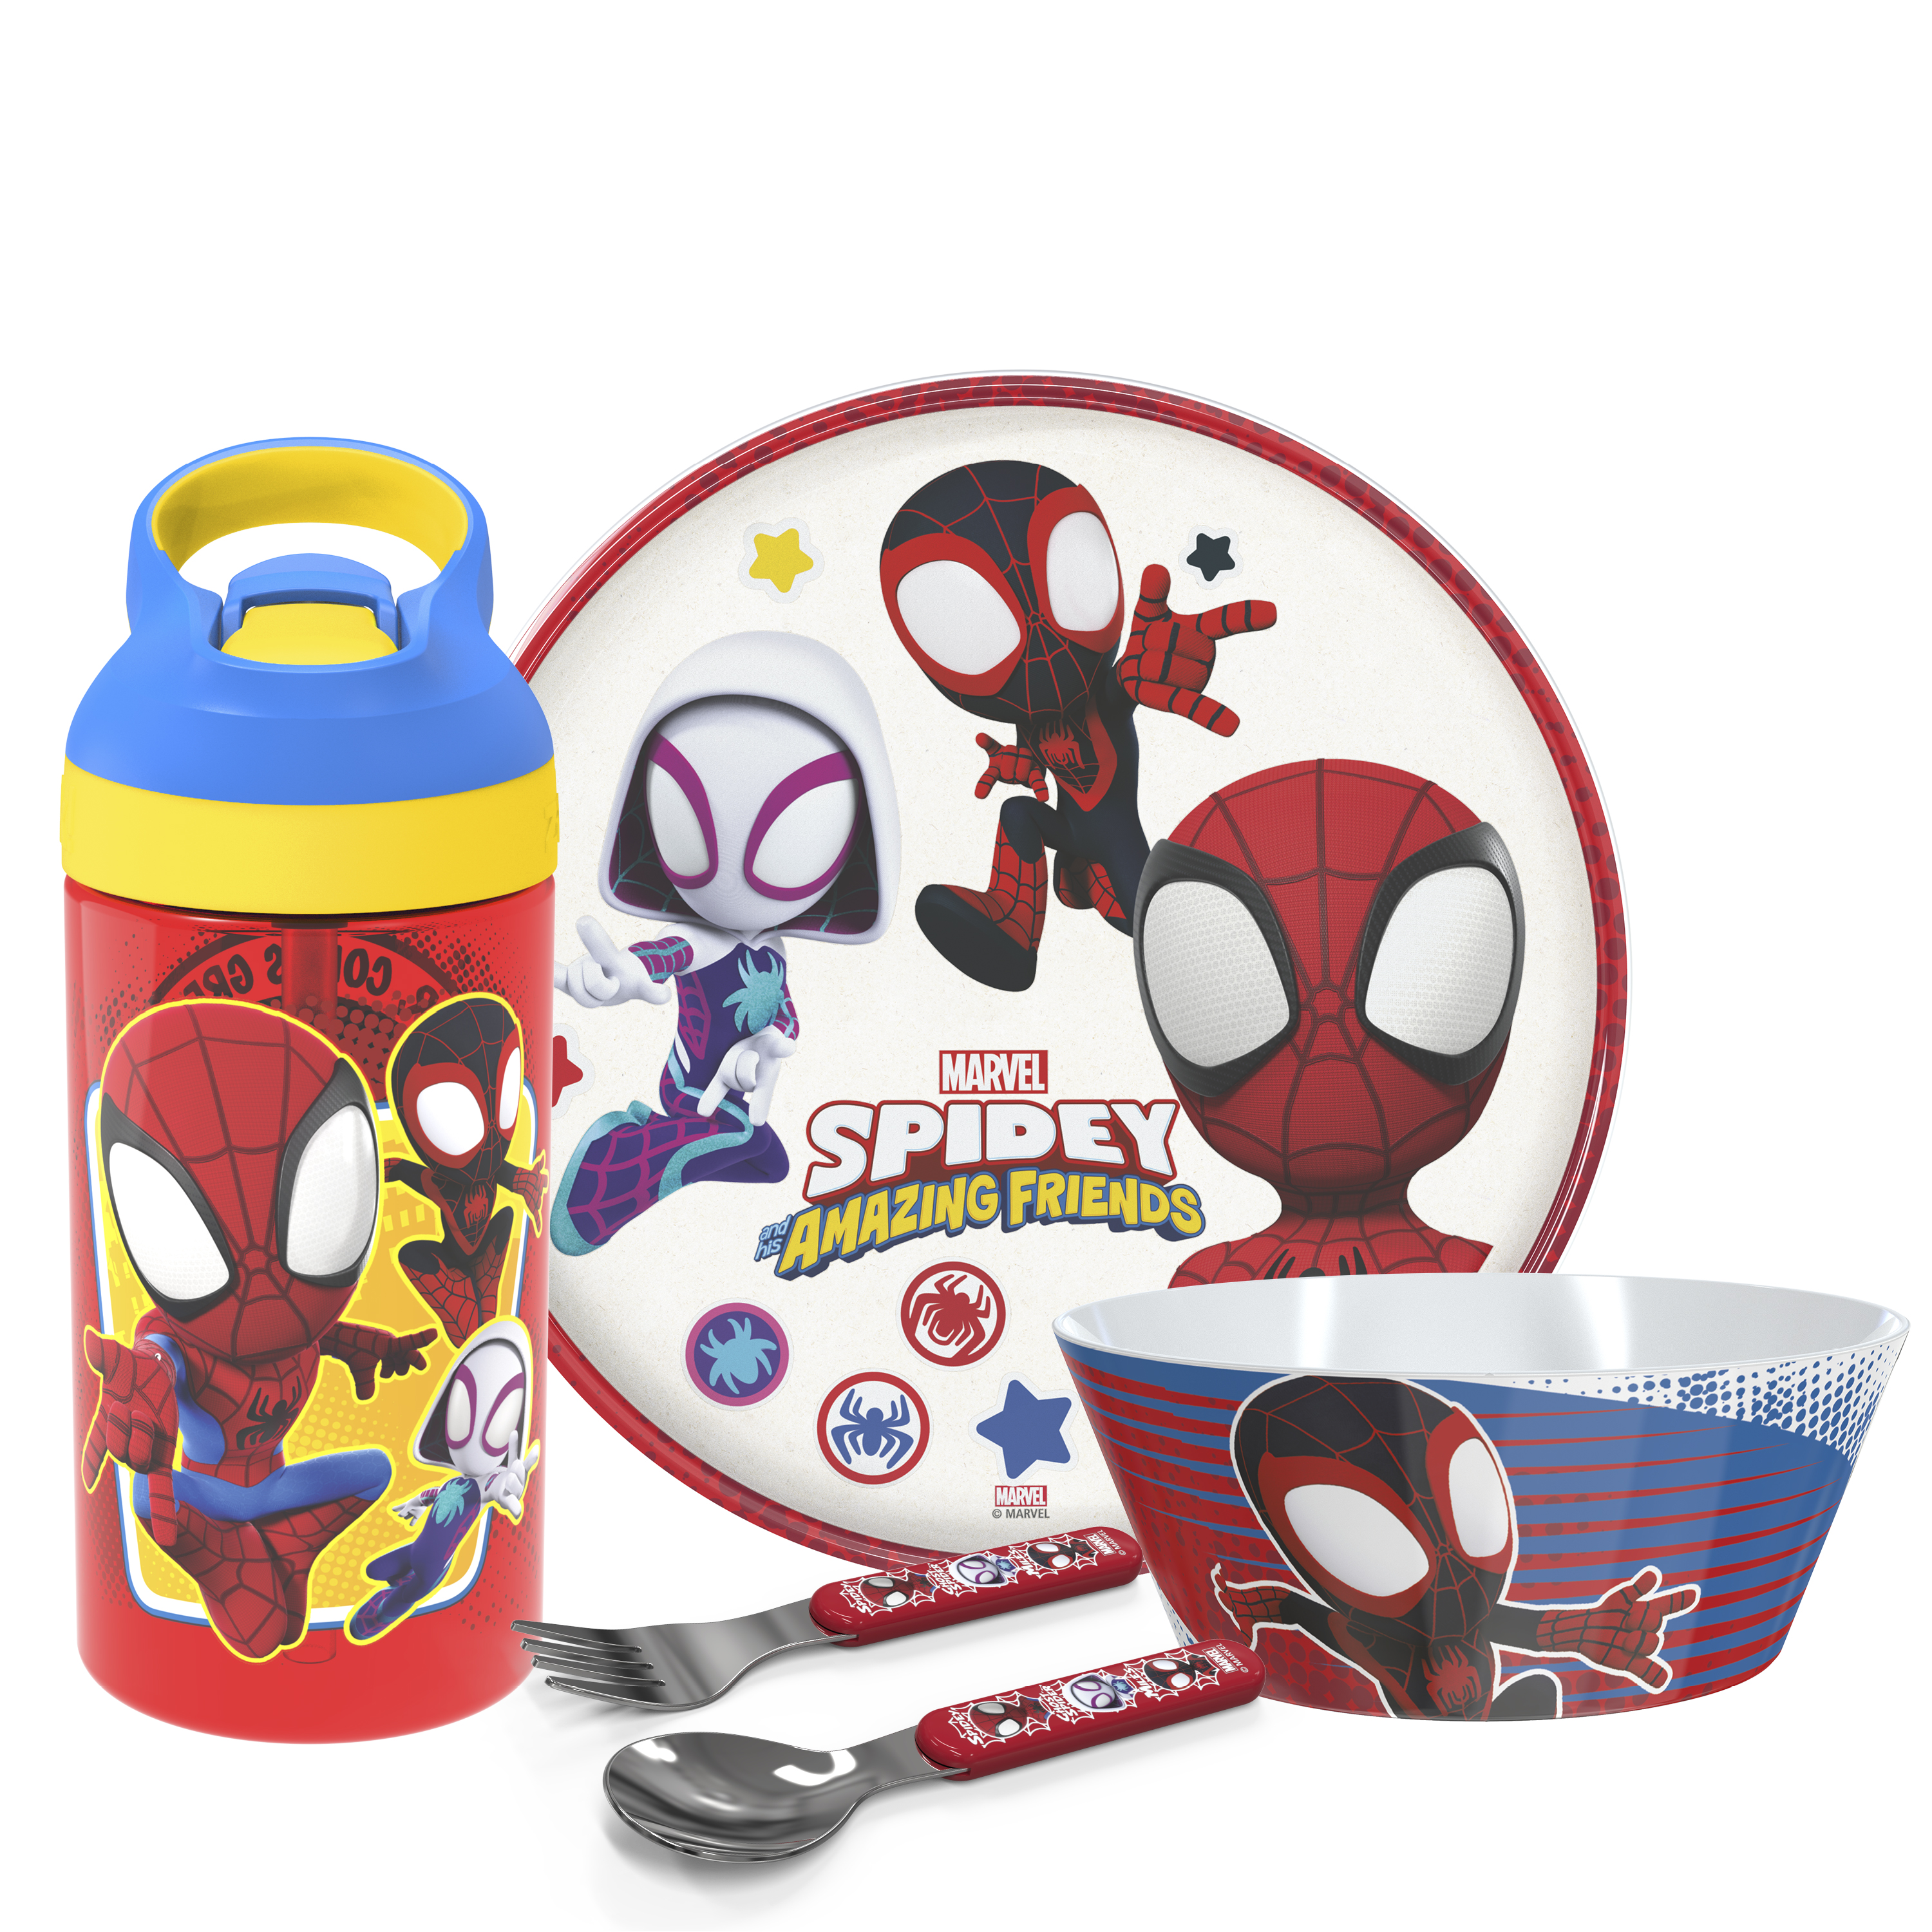 Spider-Man and His Amazing Friends Dinnerware Set, Spider-Friends, 5-piece set slideshow image 1